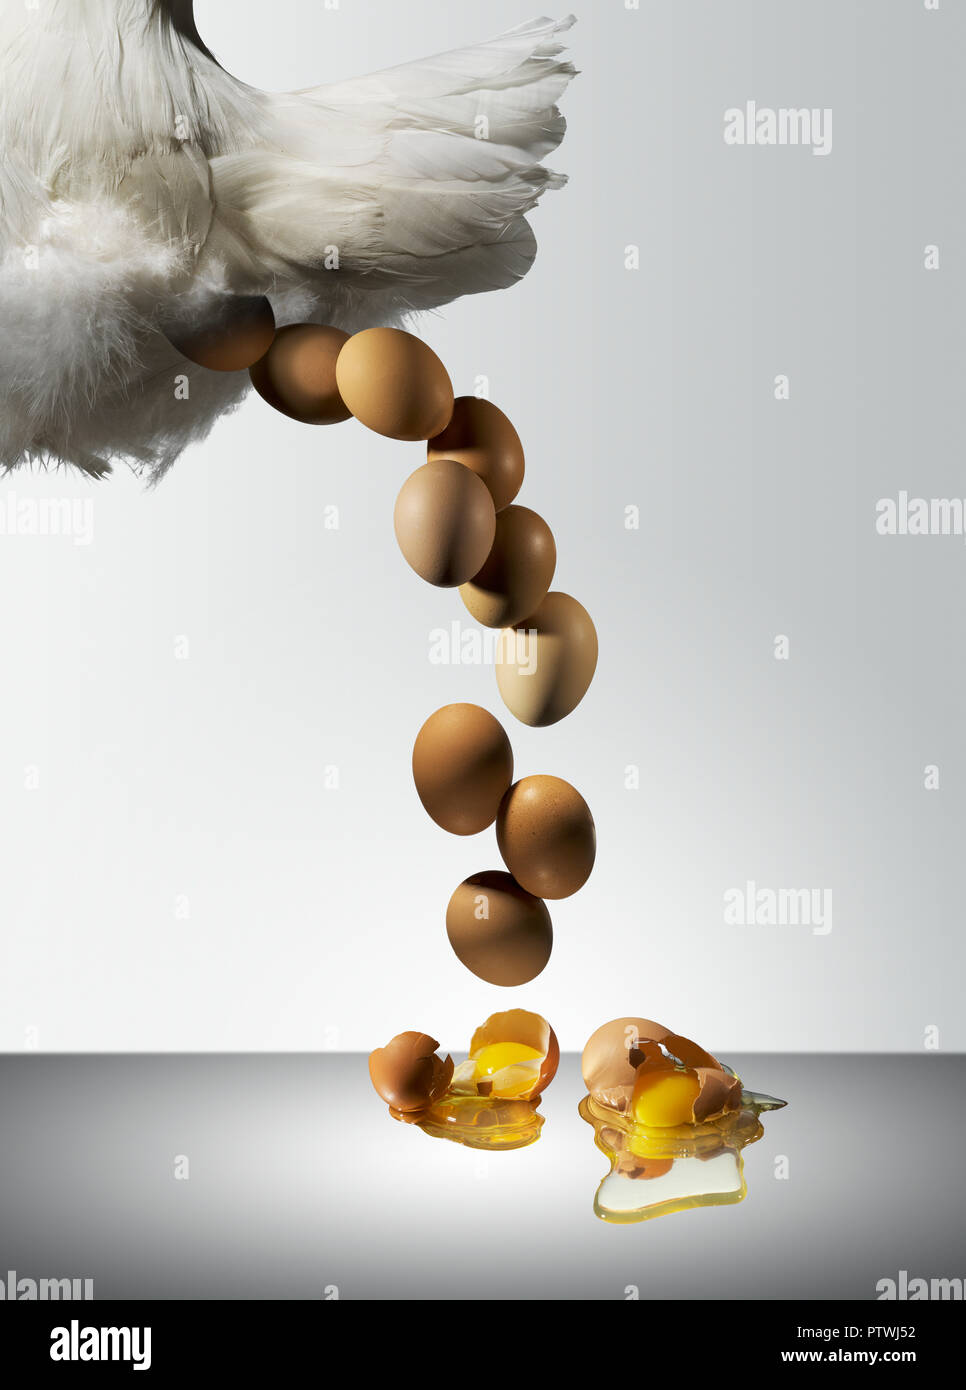 Gallina poniendo huevos frescos con yema de huevo y albúmina derramando  sobre la superficie Fotografía de stock - Alamy